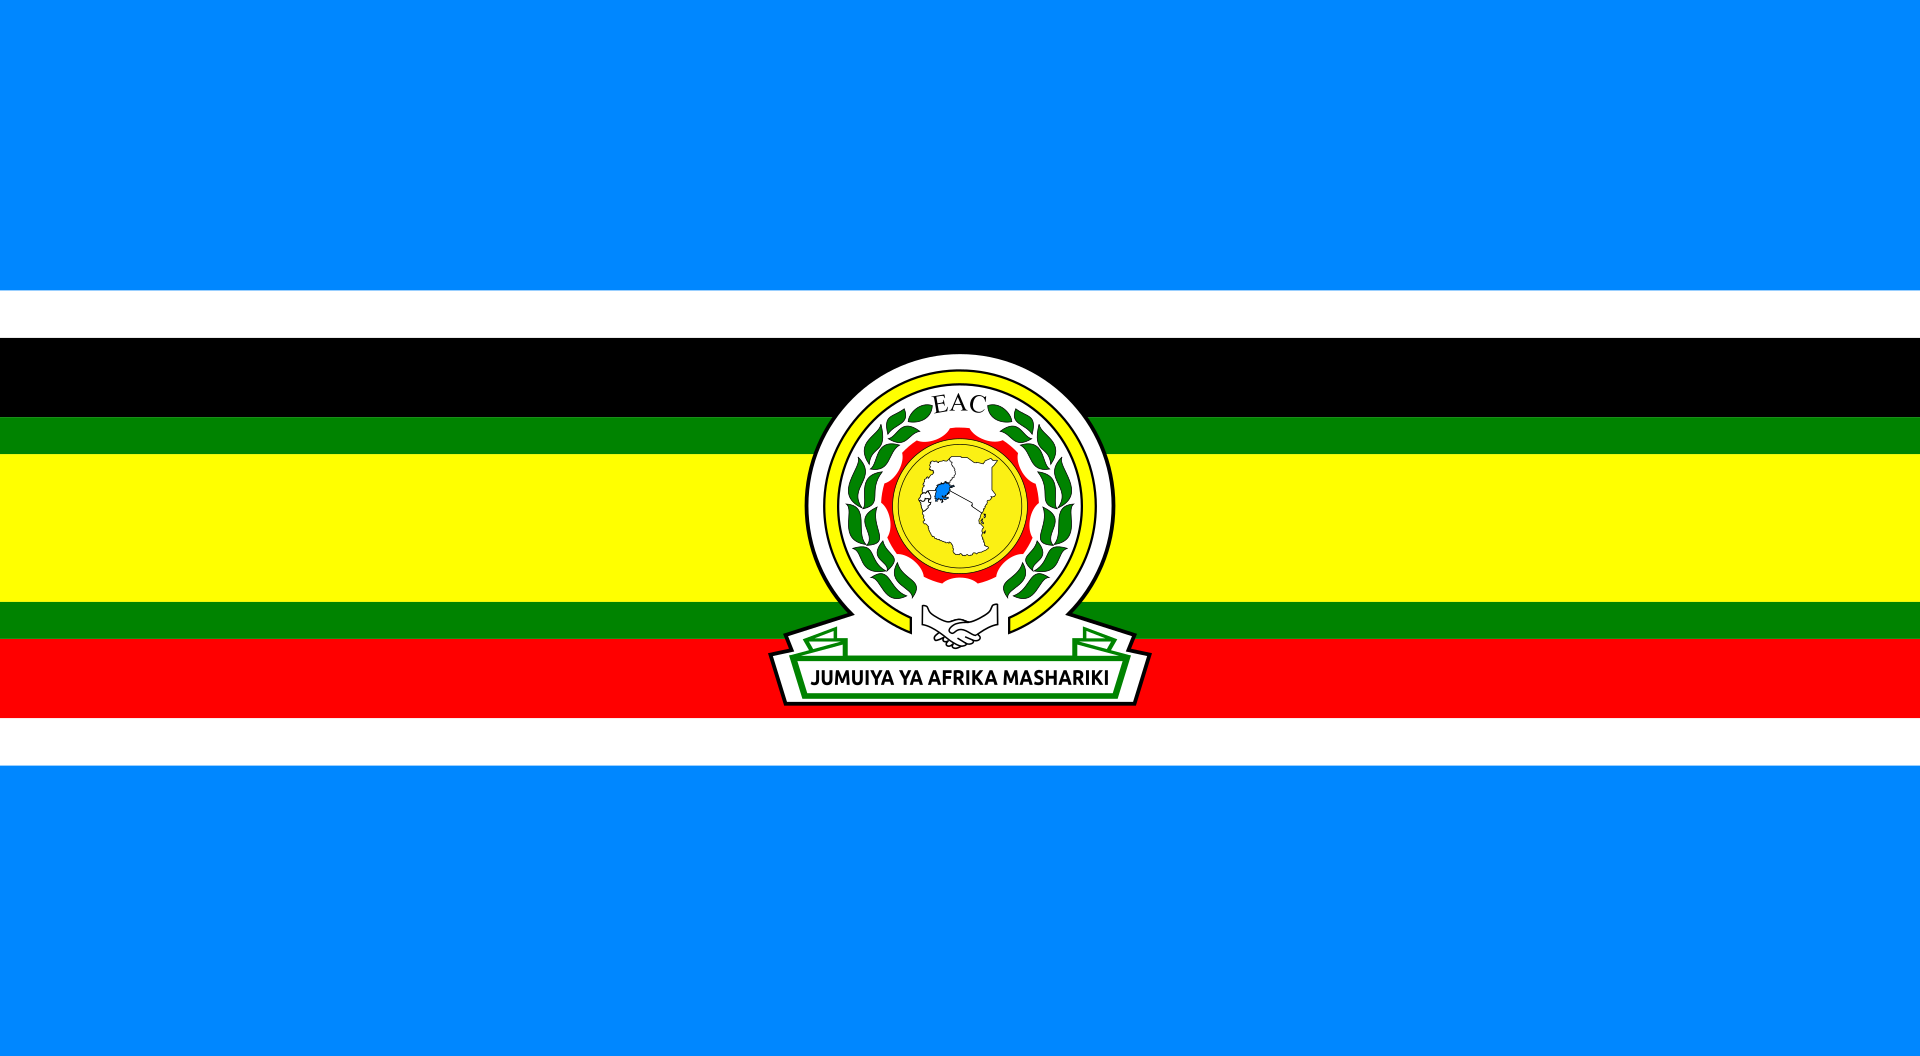 Восточноафриканское сообщество - Восточно-Африканское Содружество - East African Community, EAC